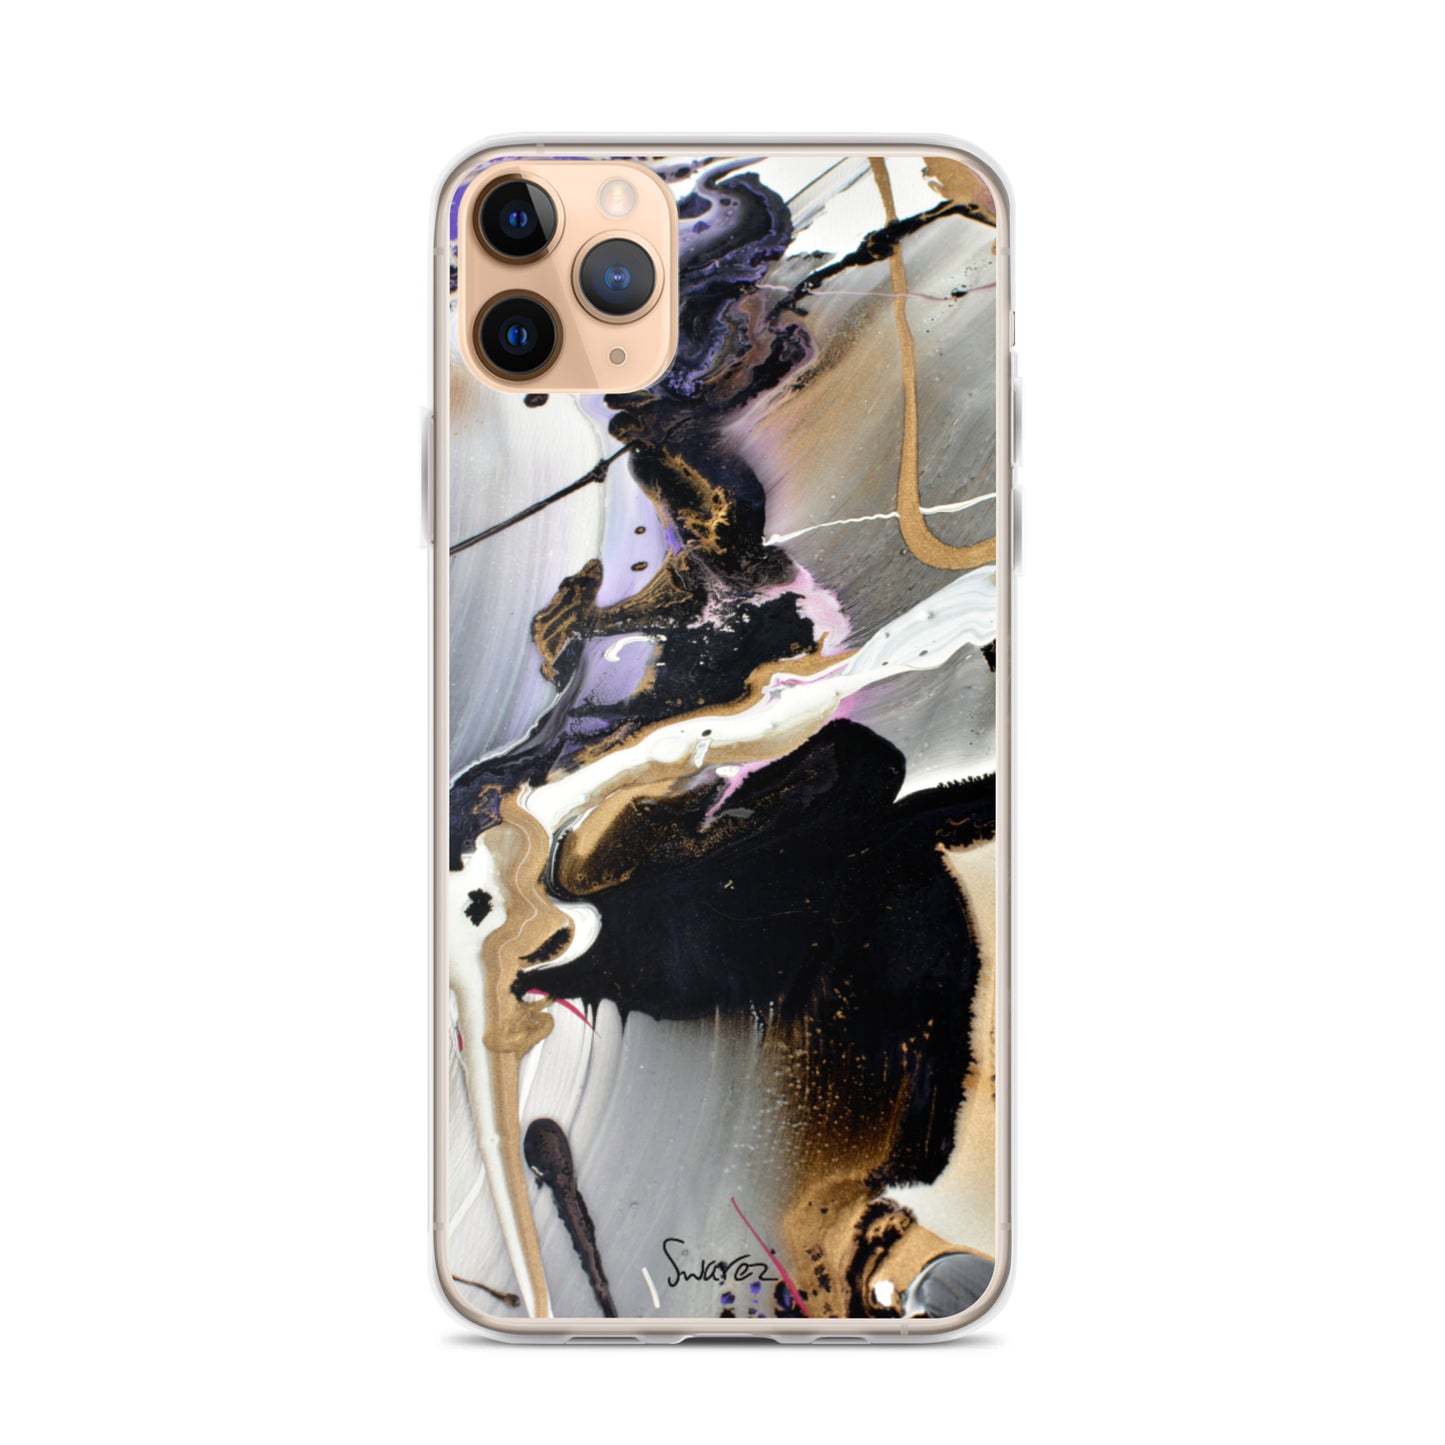 Capa para iPhone - design roxo e dourado